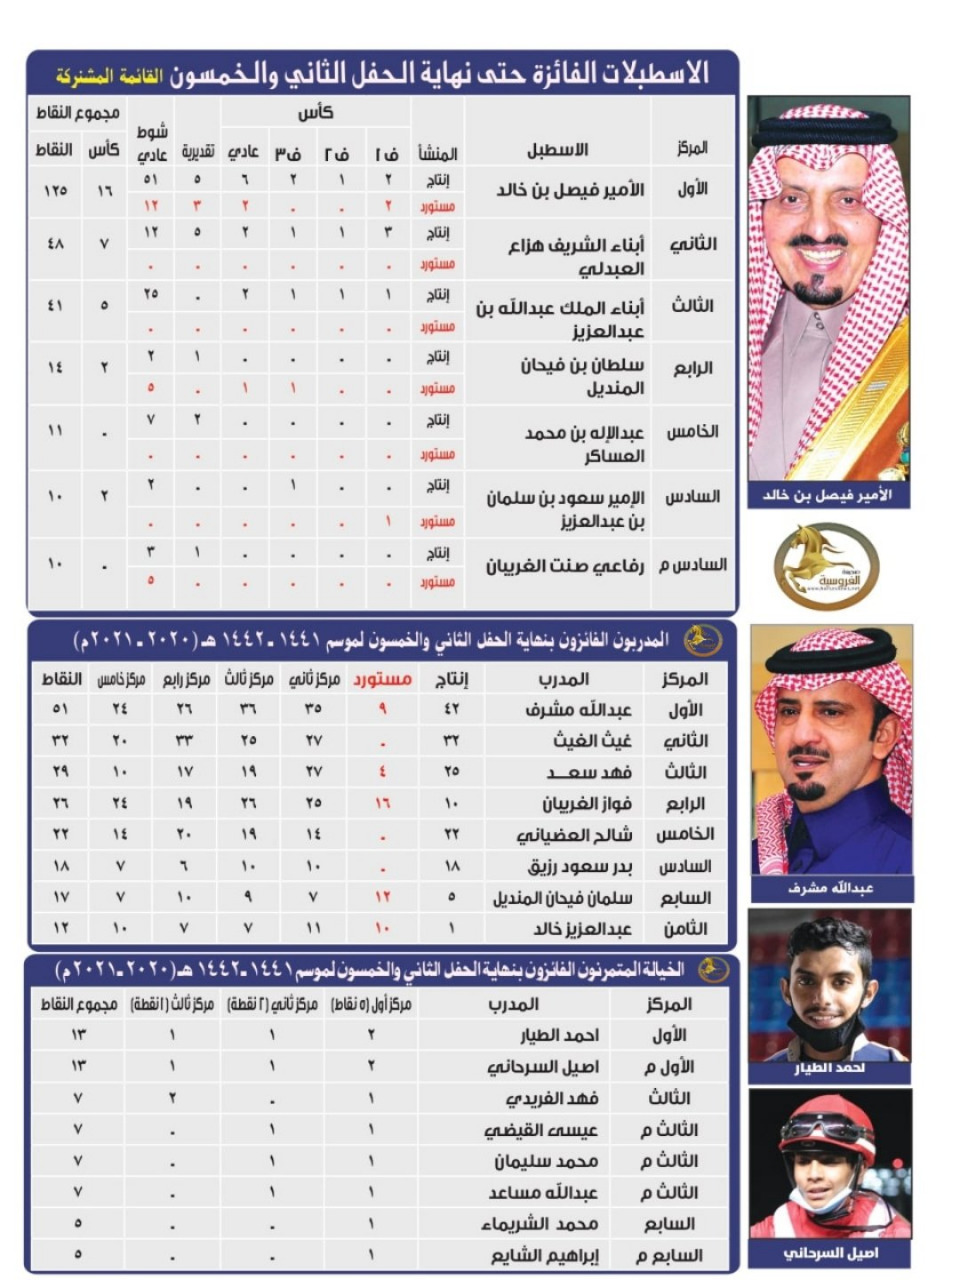 بالأسماء والصور.. قائمة الفرسان الفائزين بالحفل الـ 52 لميدان الملك عبدالعزيز بالجنادرية